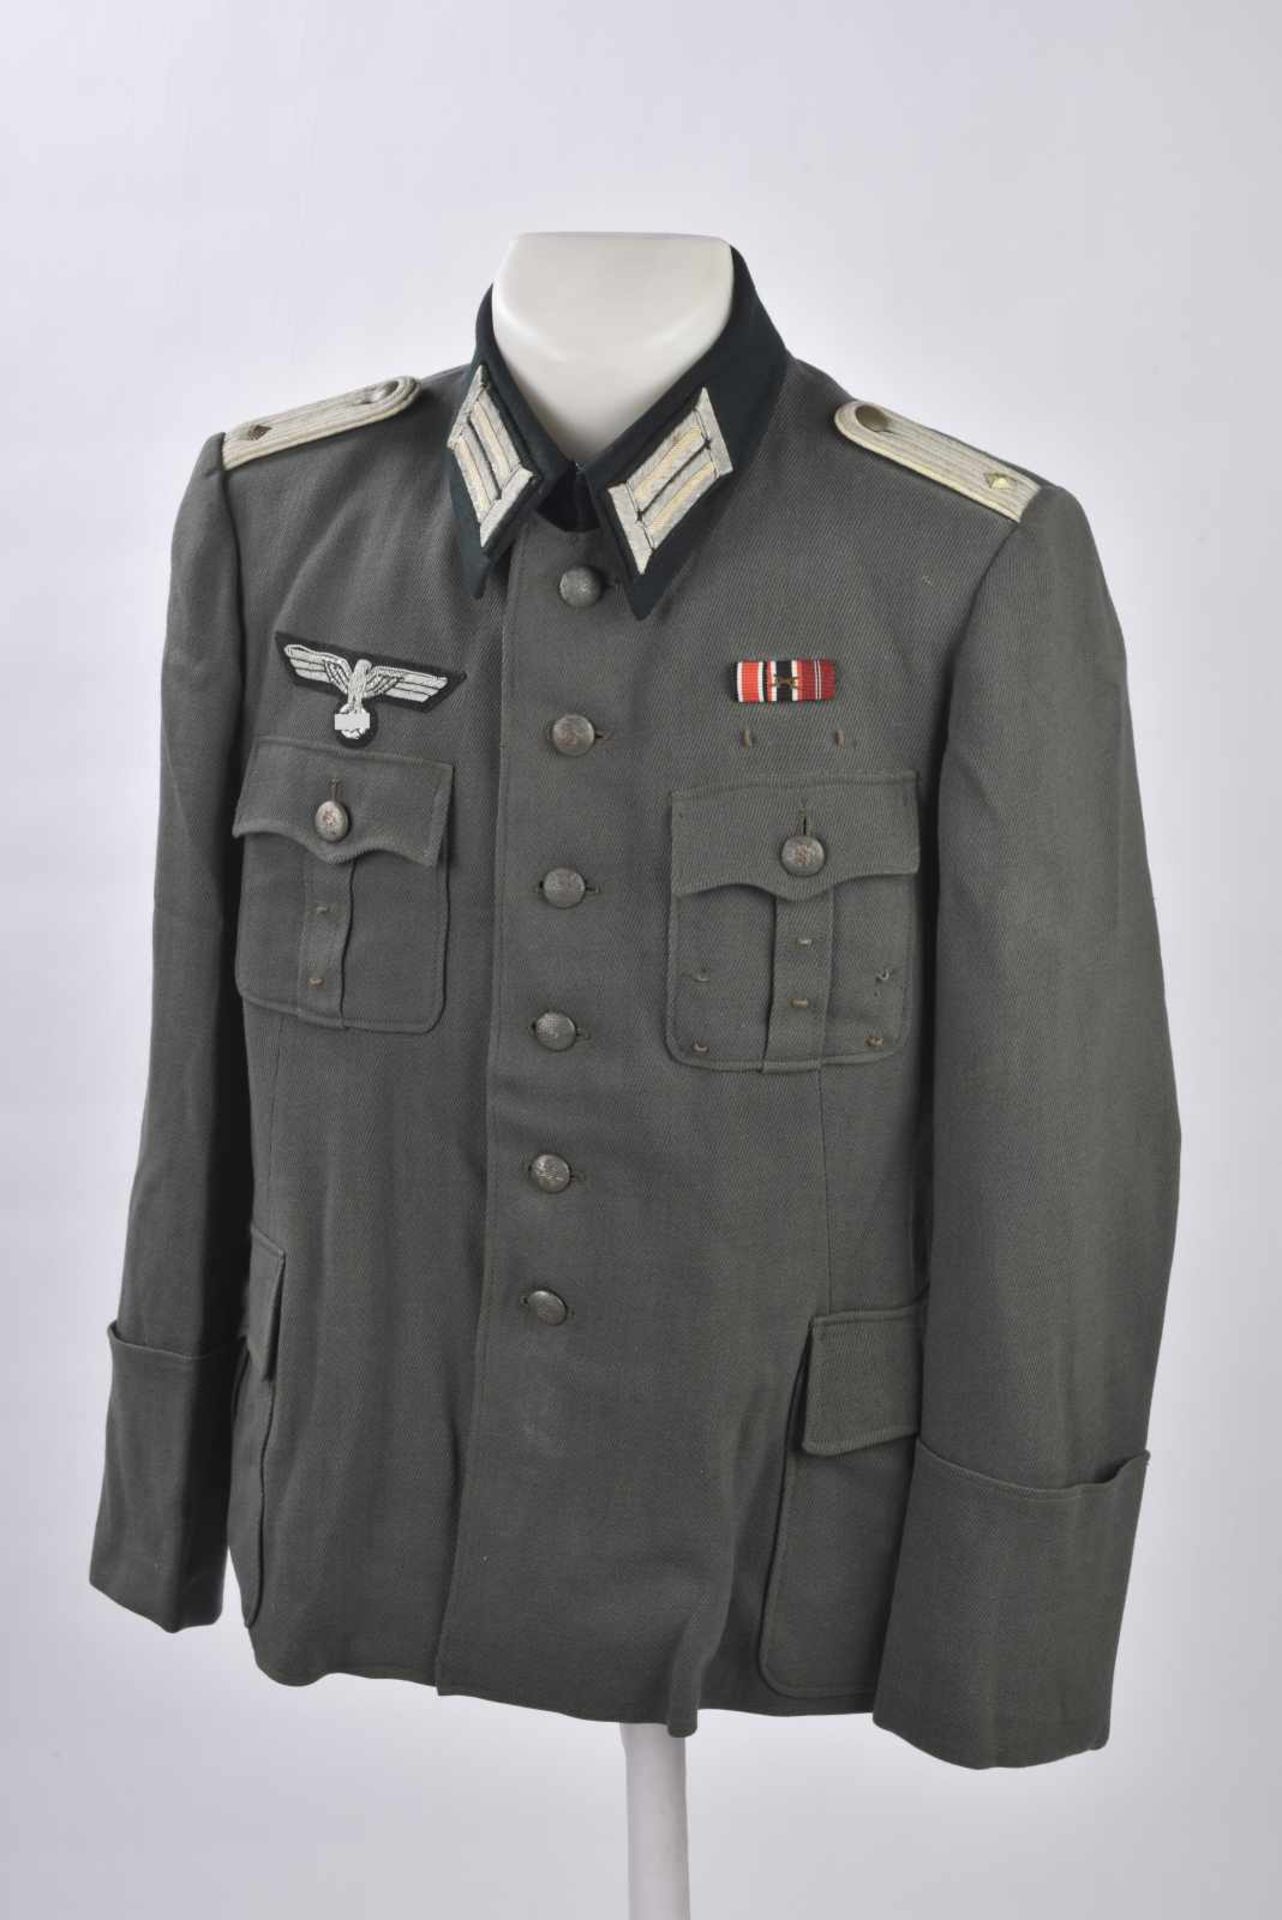 Vareuse d'Oberleutnant de l'infanterieEn gabardine grise type italienne, tous les boutons sont